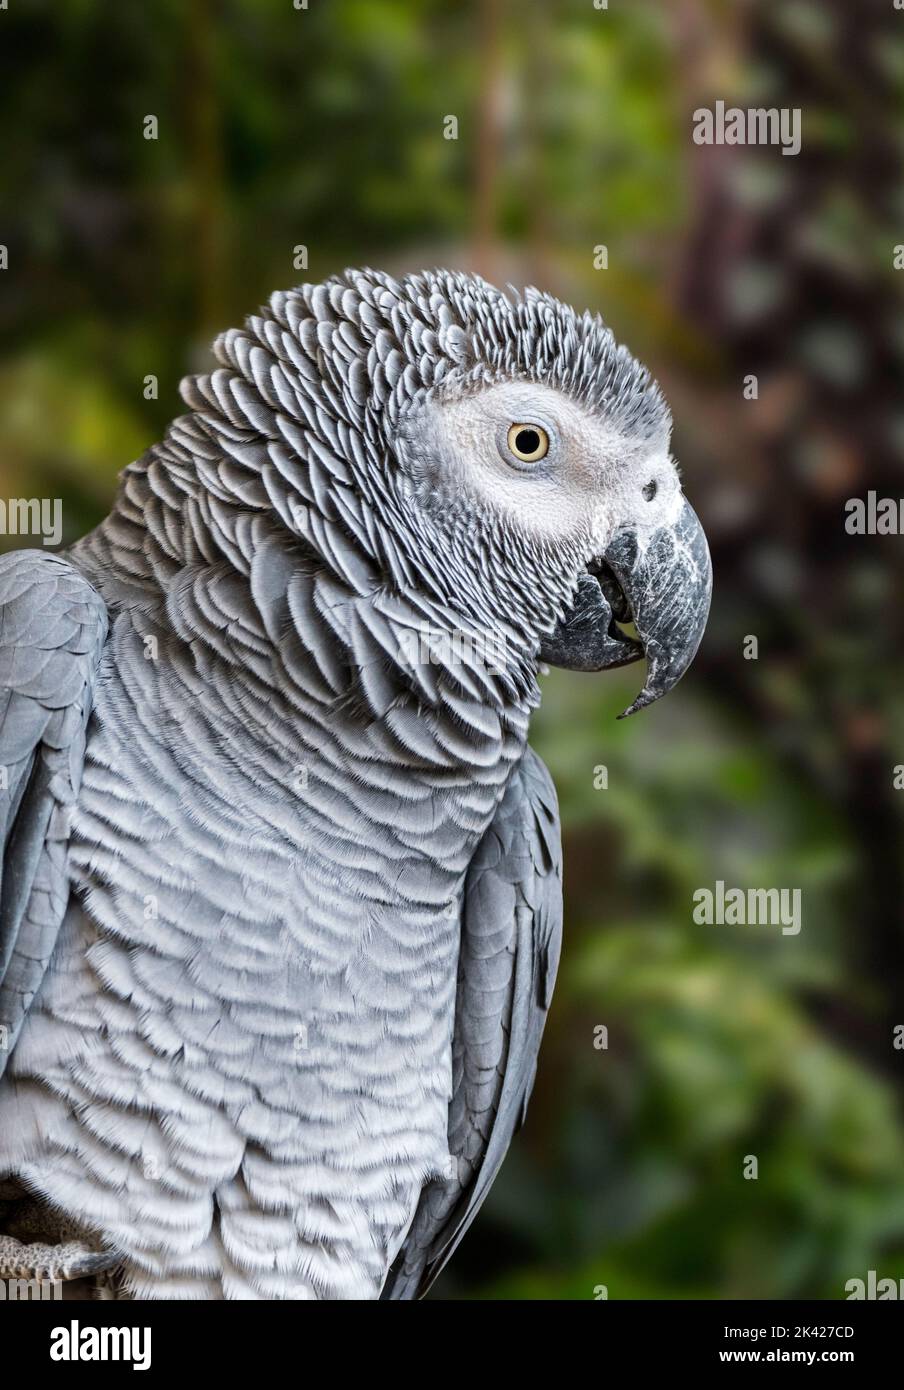 Congo pappagallo grigio / Congo pappagallo grigio africano / pappagallo grigio africano (Psittacus erithacus / Psittacus cinereus) ritratto in primo piano nella foresta Foto Stock